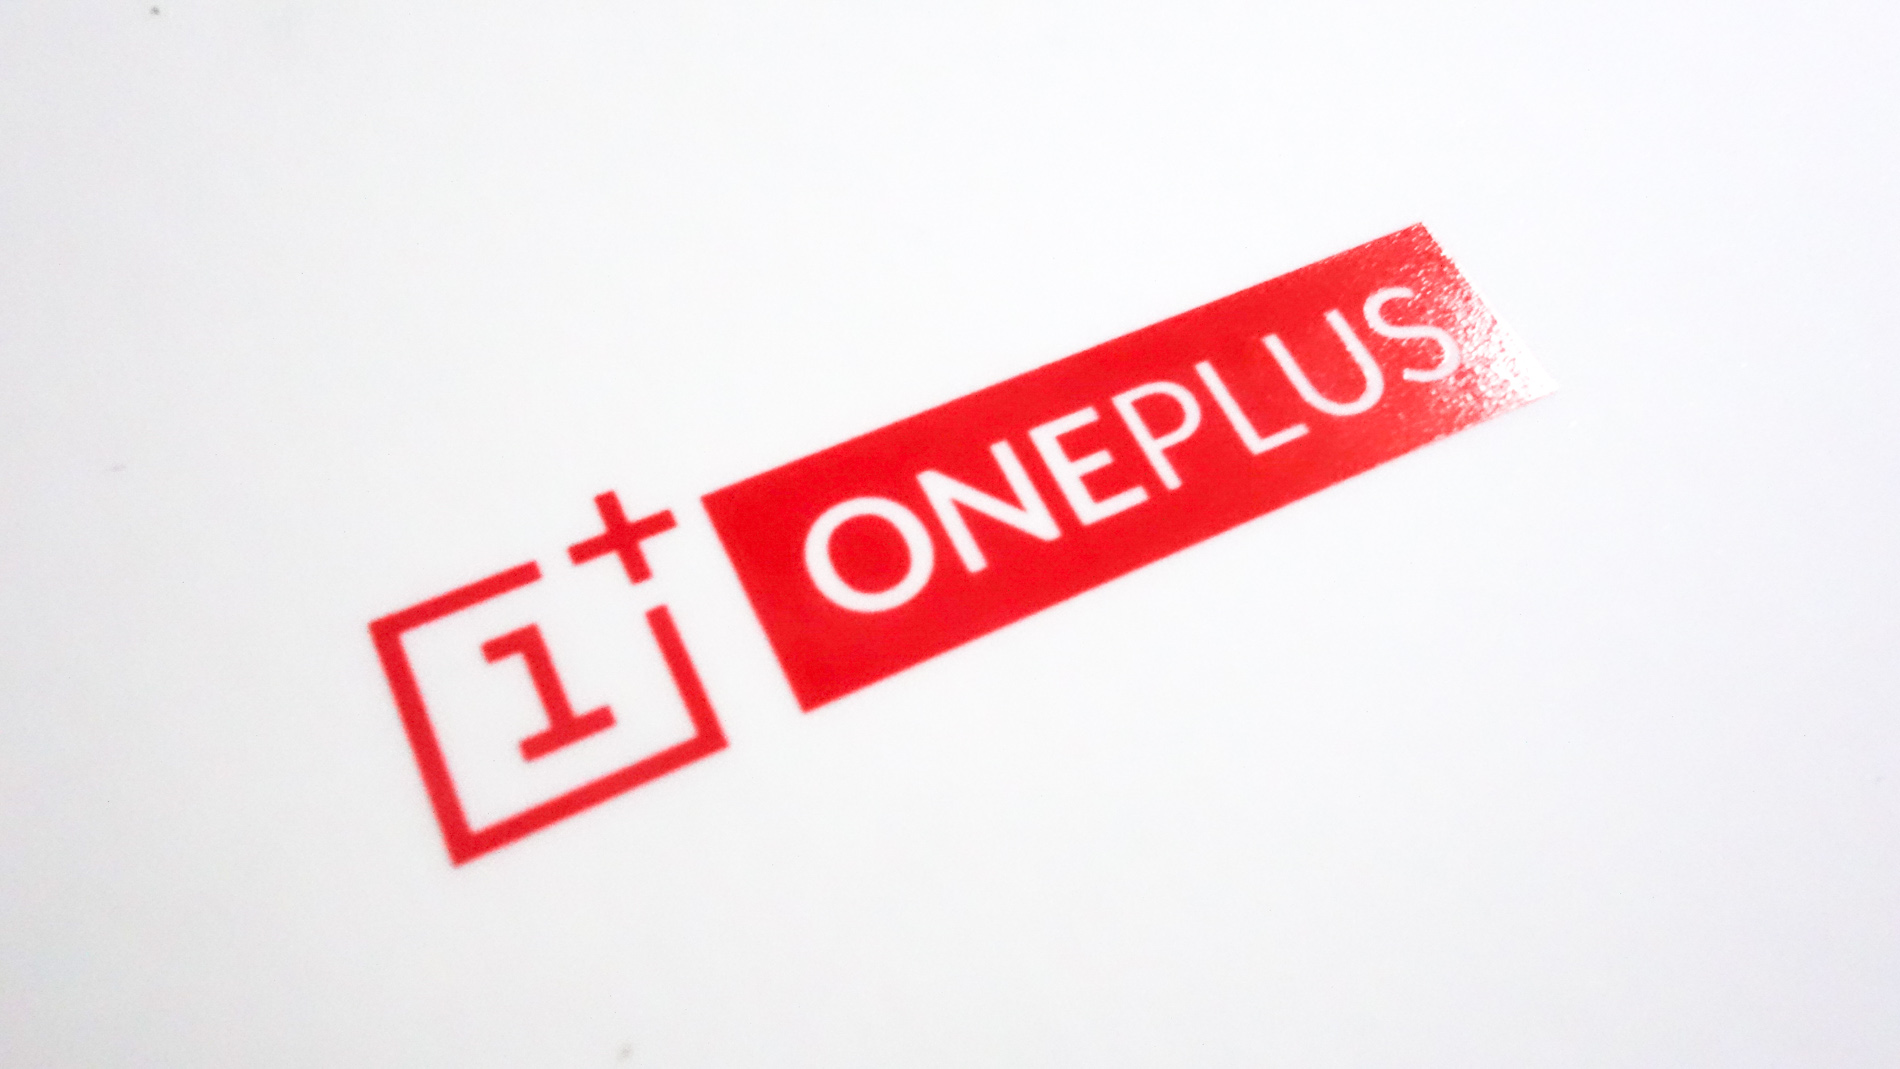 بعد الفضيحة، OnePlus تقرر التوقف عن جمع بيانات العملاء الخاصة مدونة نظام أون لاين التقنية